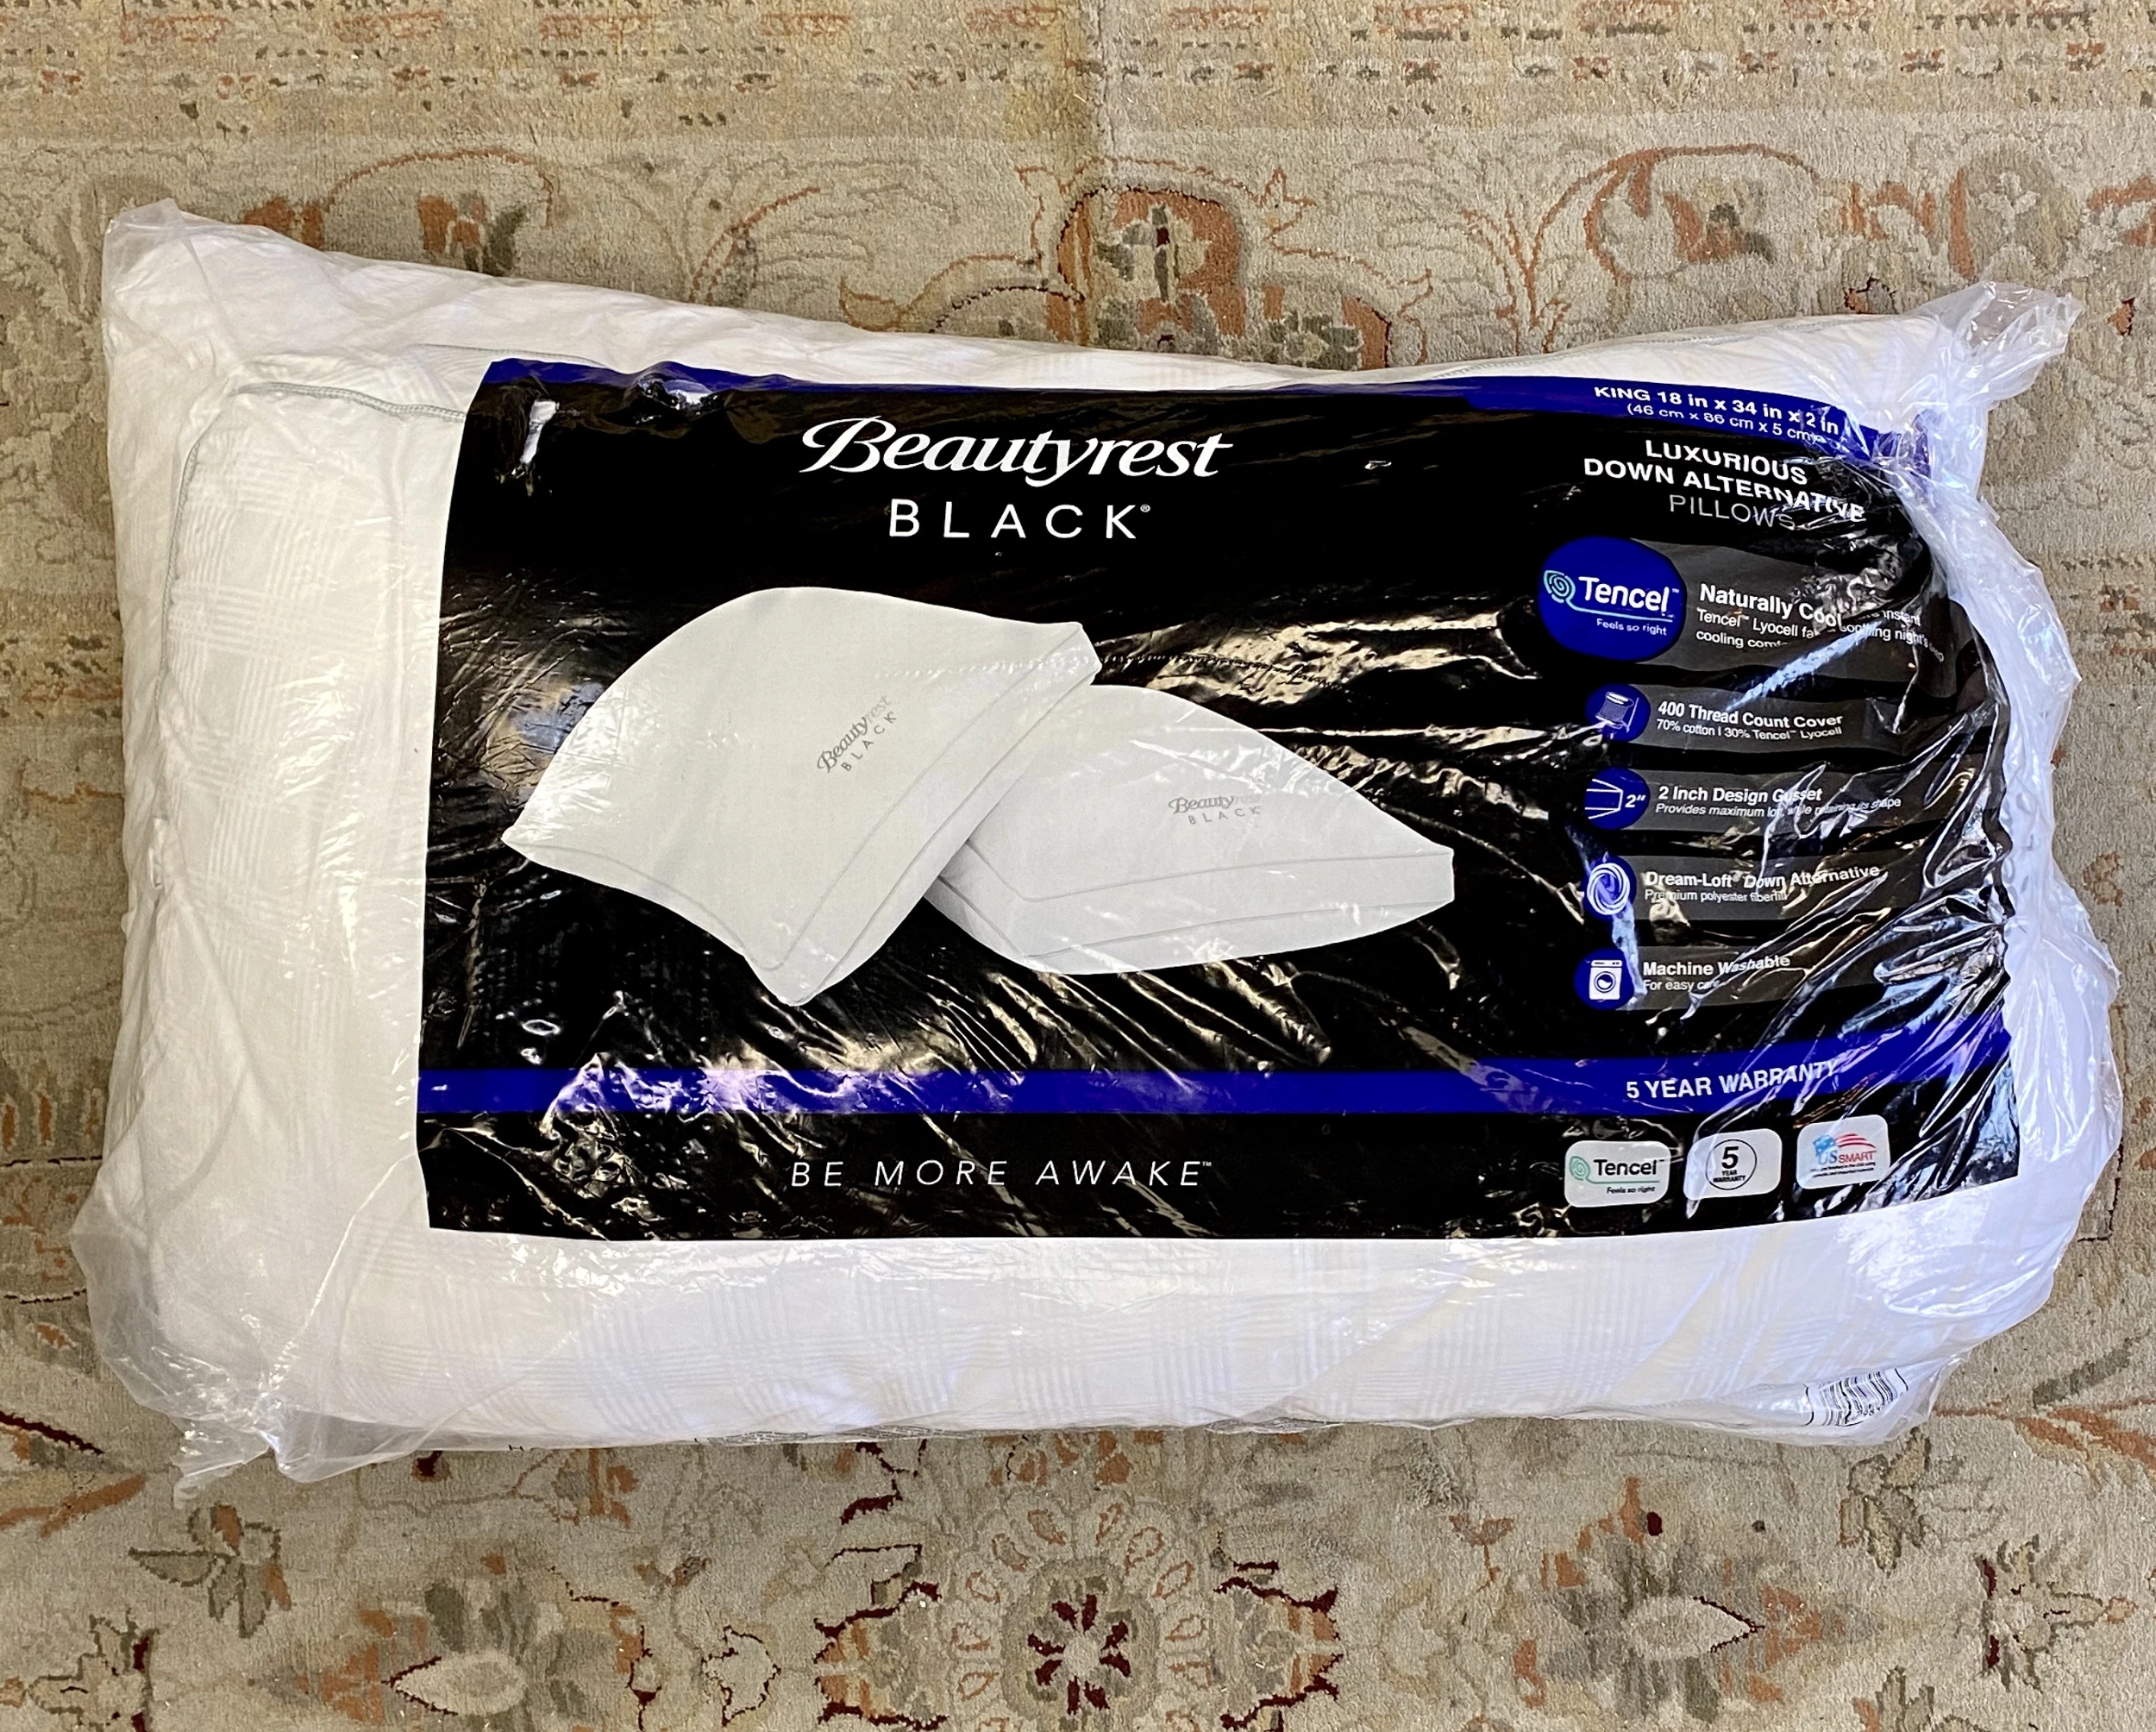 beautyrest black pillow